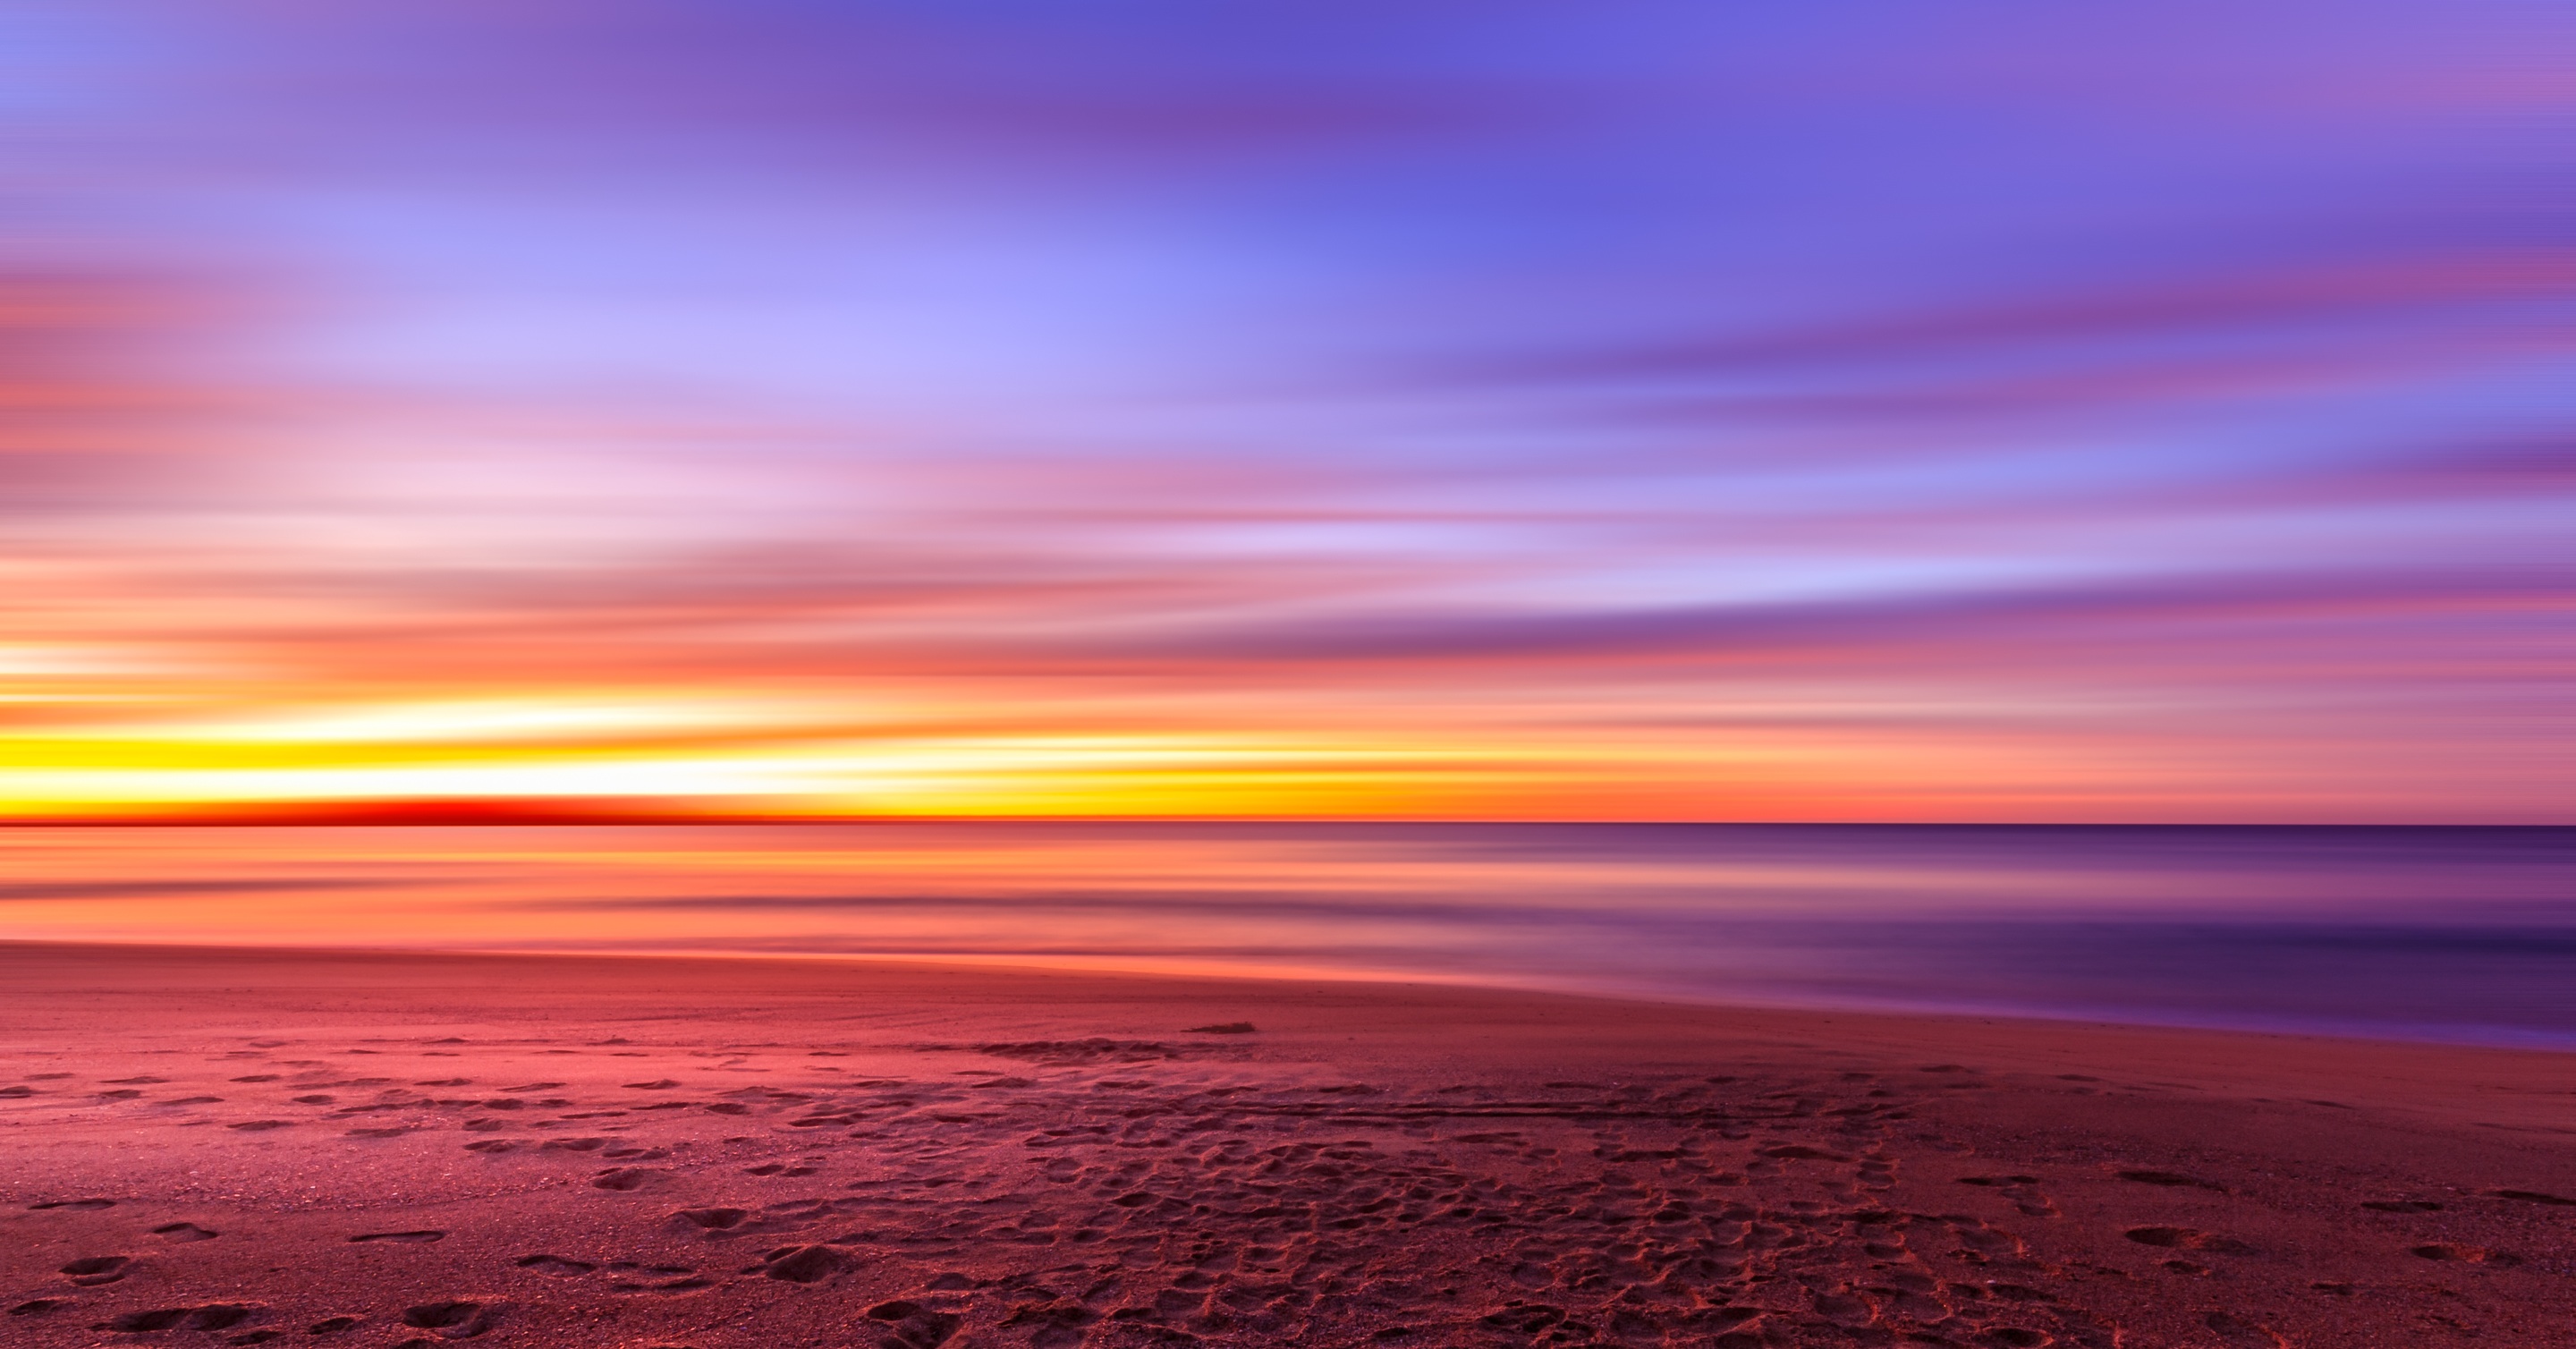 Бесплатное фото Красный закат на морском берегу